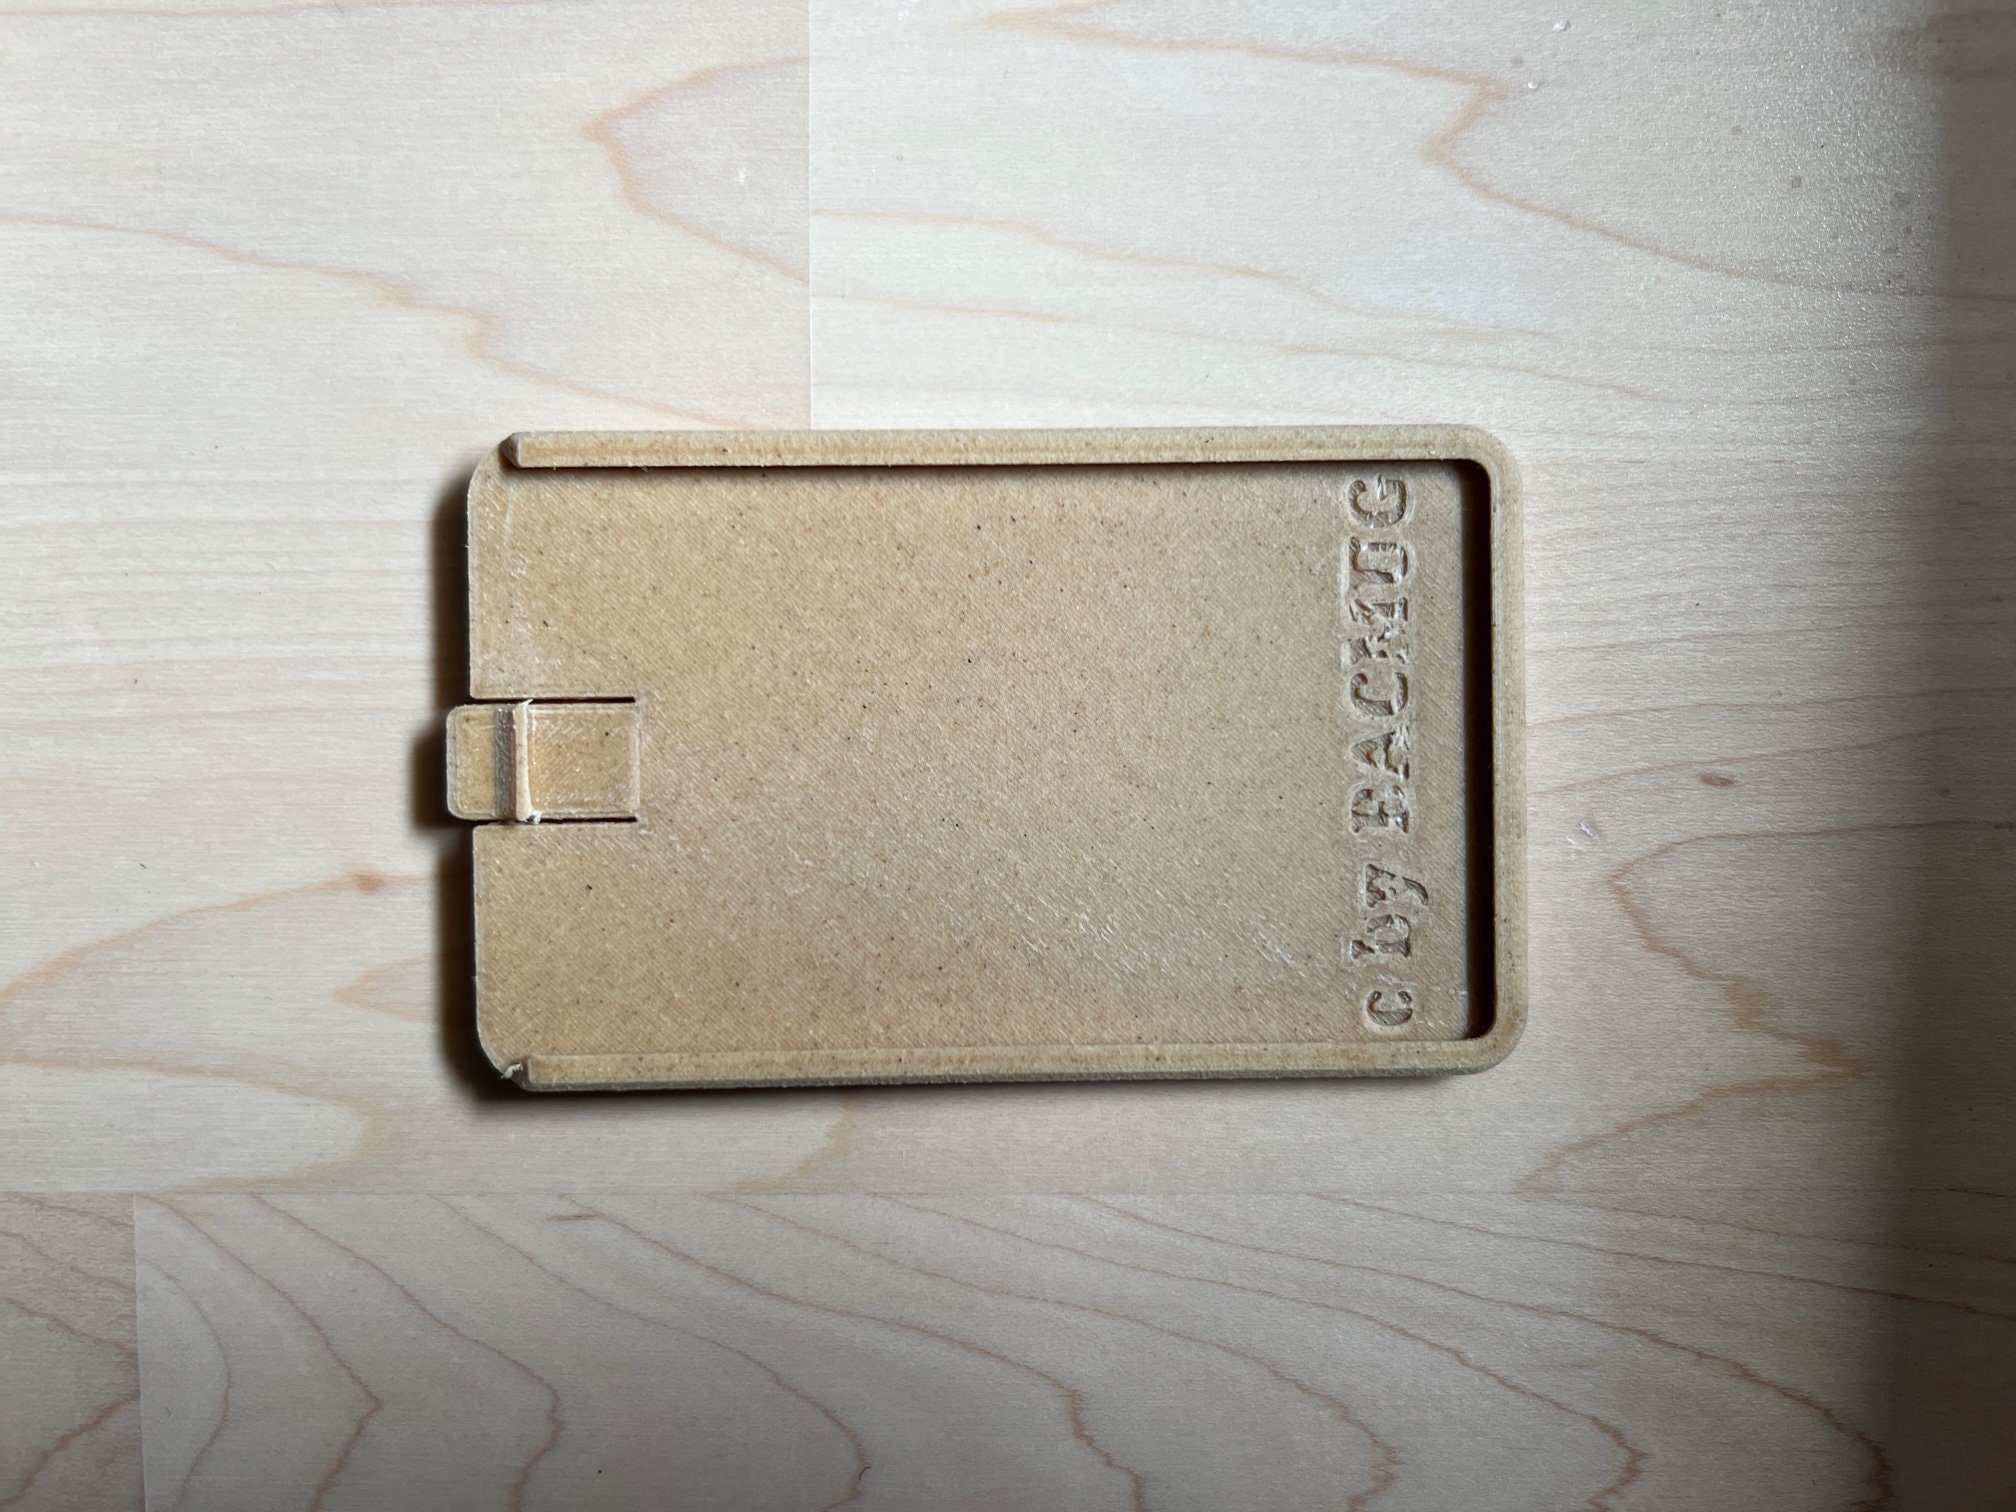 Porte-cartes VEGAN Tesla Model 3 Model Y Cork Cardsleeve creditcard card  cover keycard case -  France